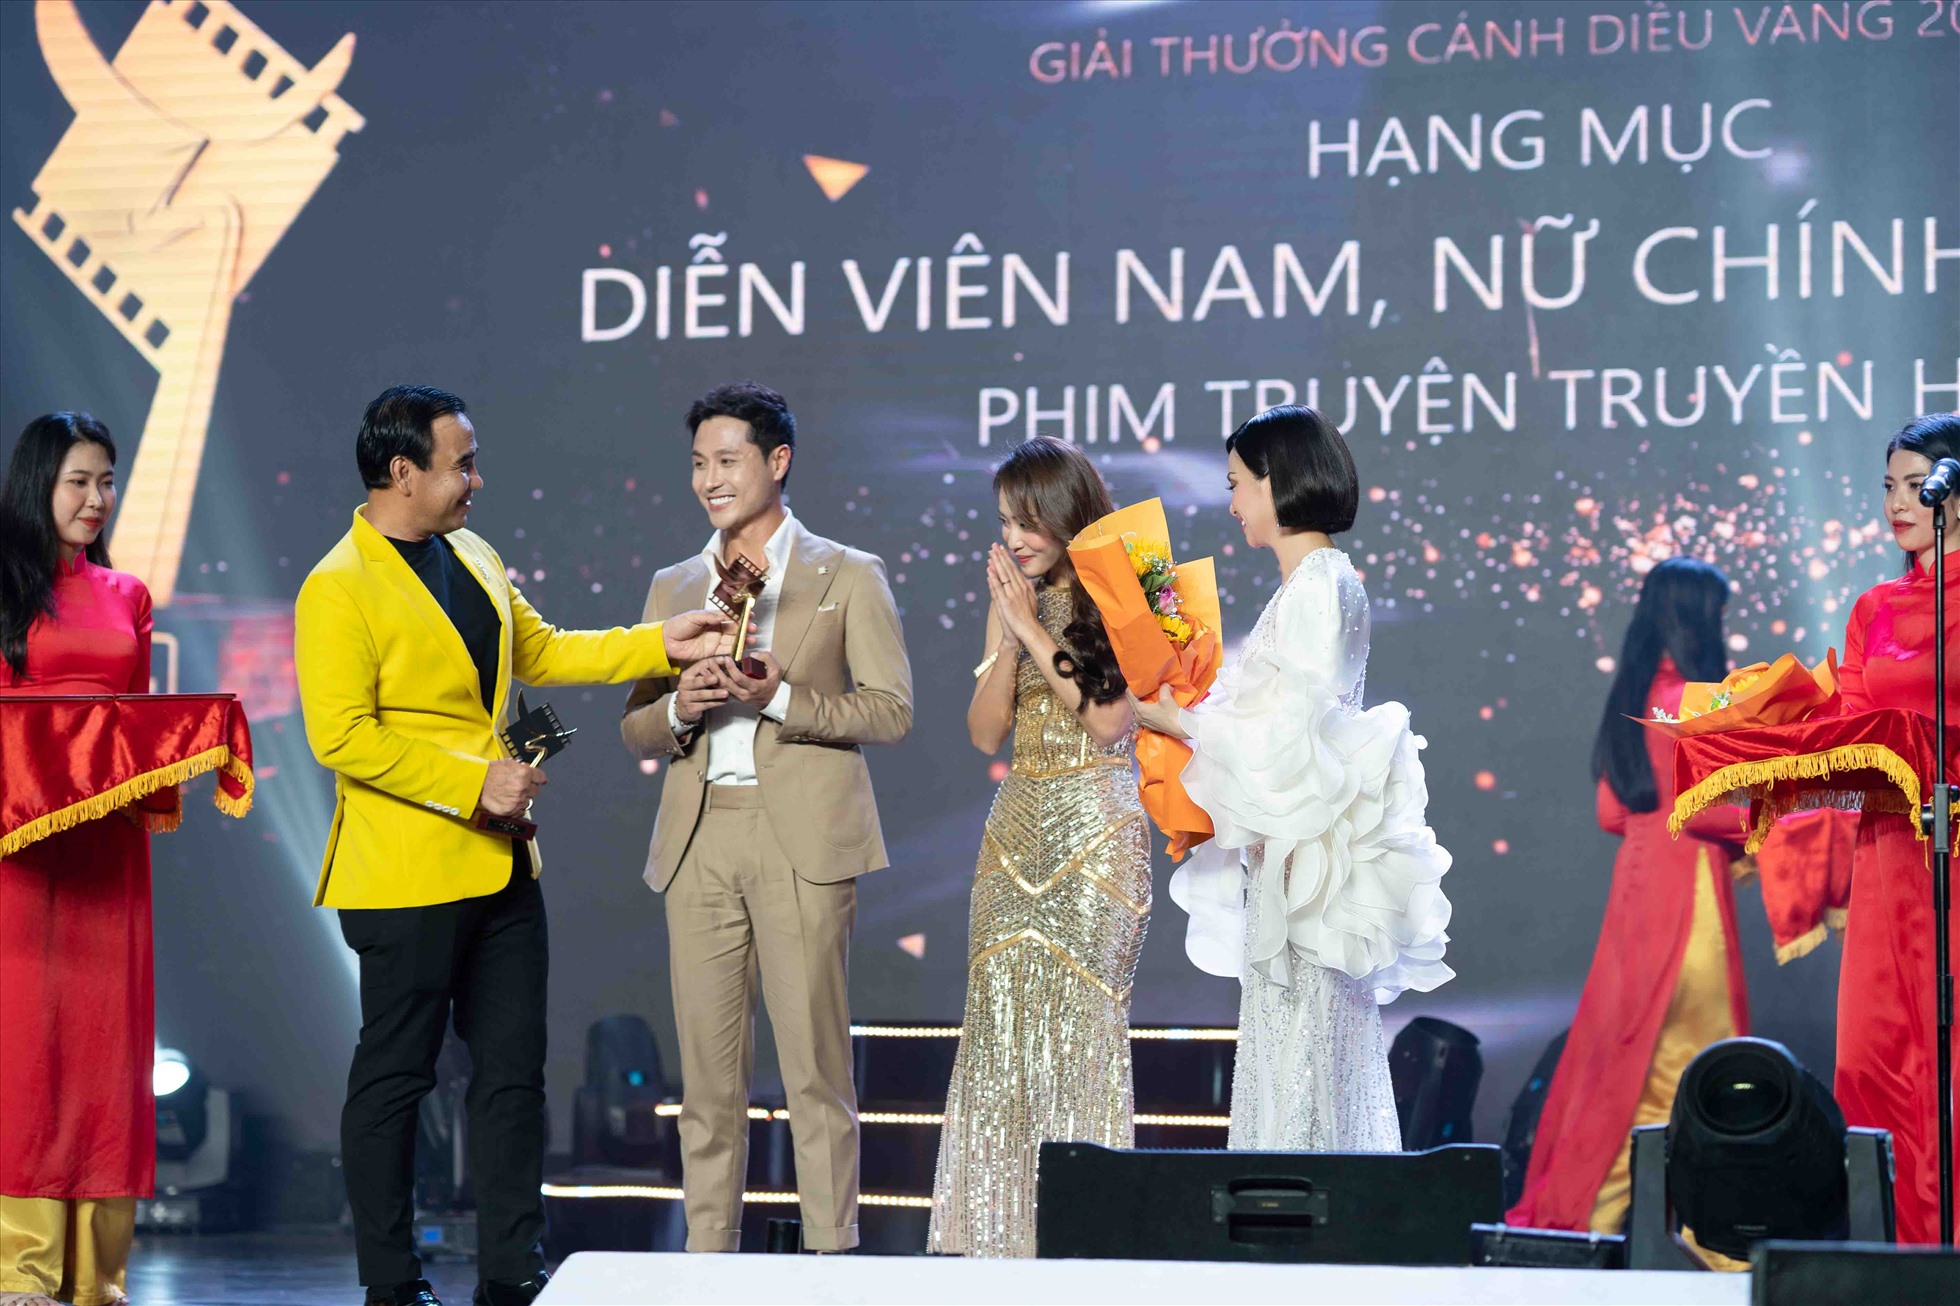 Ngoài việc thu hút ống kính với sắc vóc, Hà Phương cùng nghệ sĩ Quyền Linh là khách mời vinh dự lên sân khấu để công bố, trao giải thưởng cho Thanh Sơn - Khả Ngân (phim” 11 tháng 5 ngày”) ở hạng mục Nam - nữ diễn viên chính xuất sắc mảng truyền hình. Ảnh: NSCC.